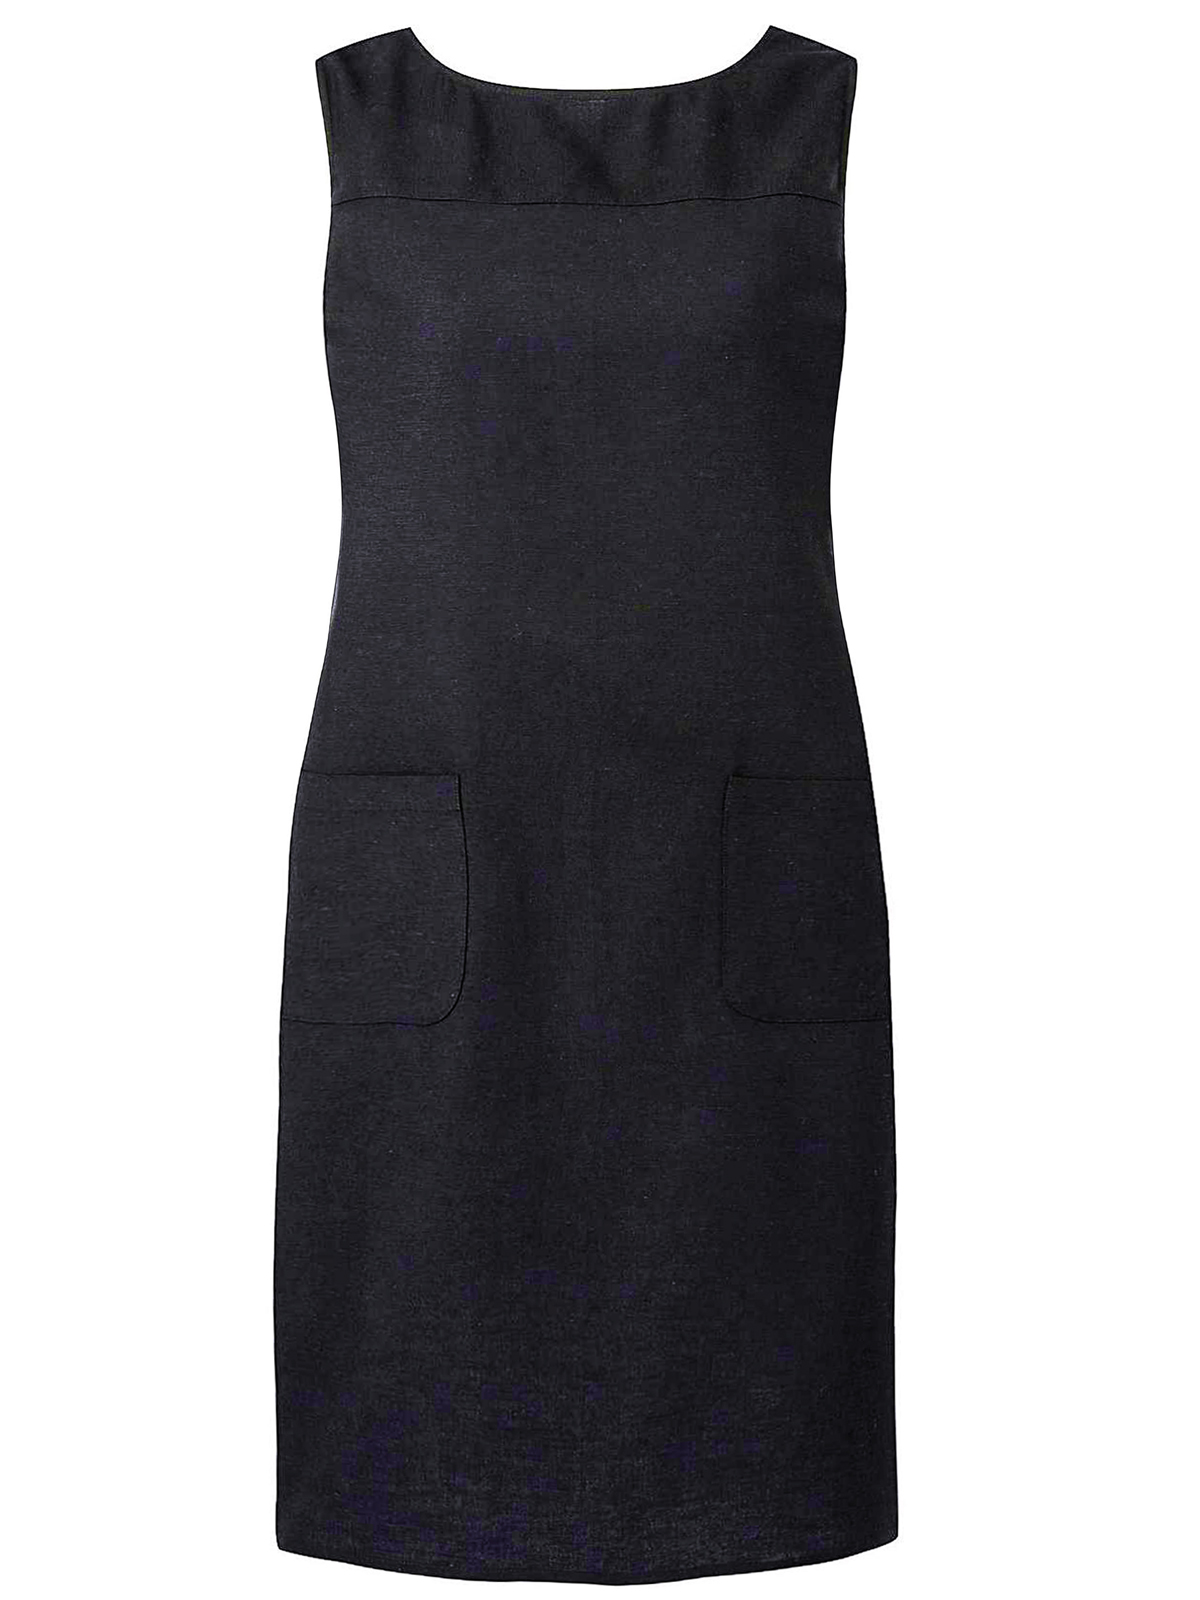 black linen shift dress uk